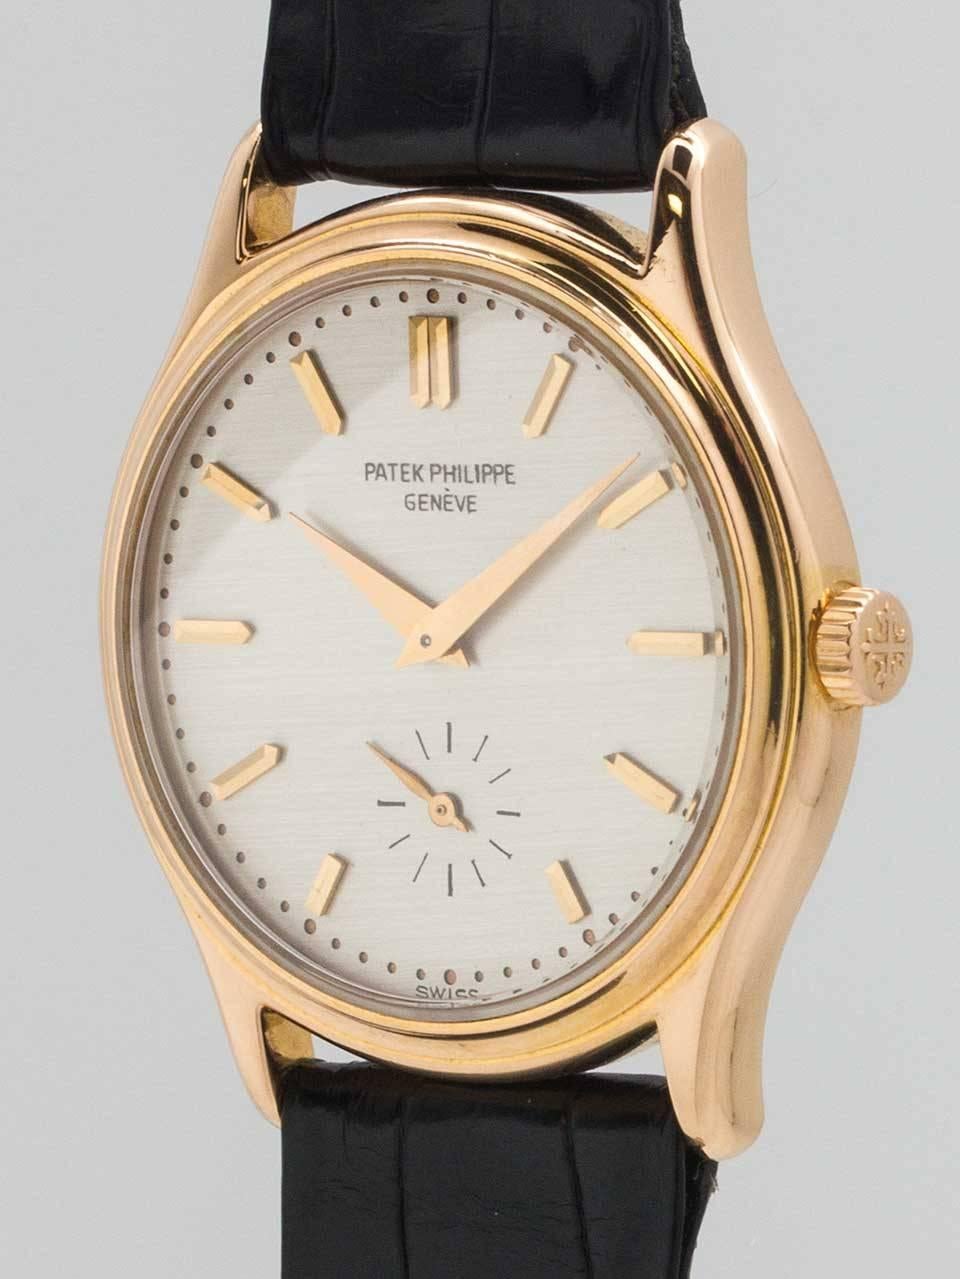 Modern Patek Philippe Rose Gold Manual Wind Wristwatch Ref 3923, circa 1990